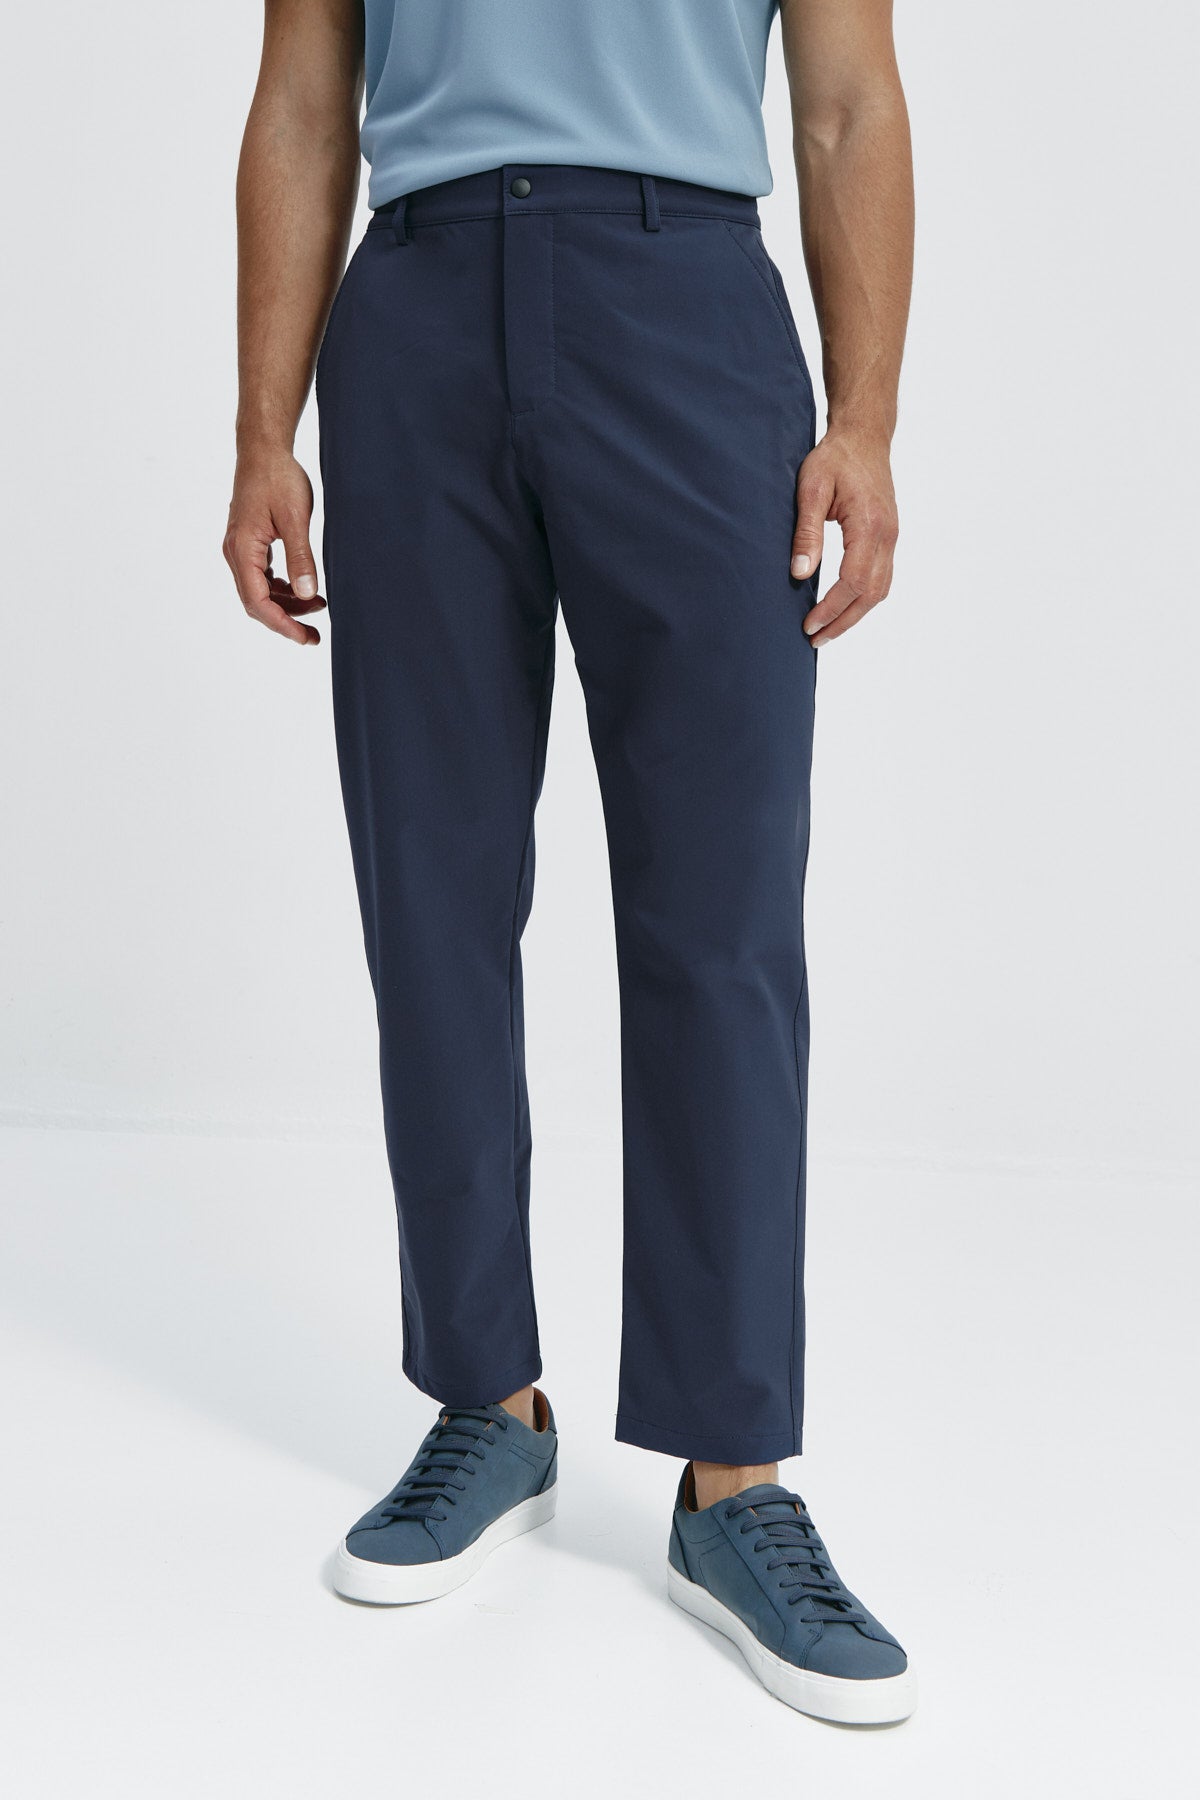 Pantalón chino regular azul marino para hombre con tecnología termorreguladora Coolmax. Foto frente